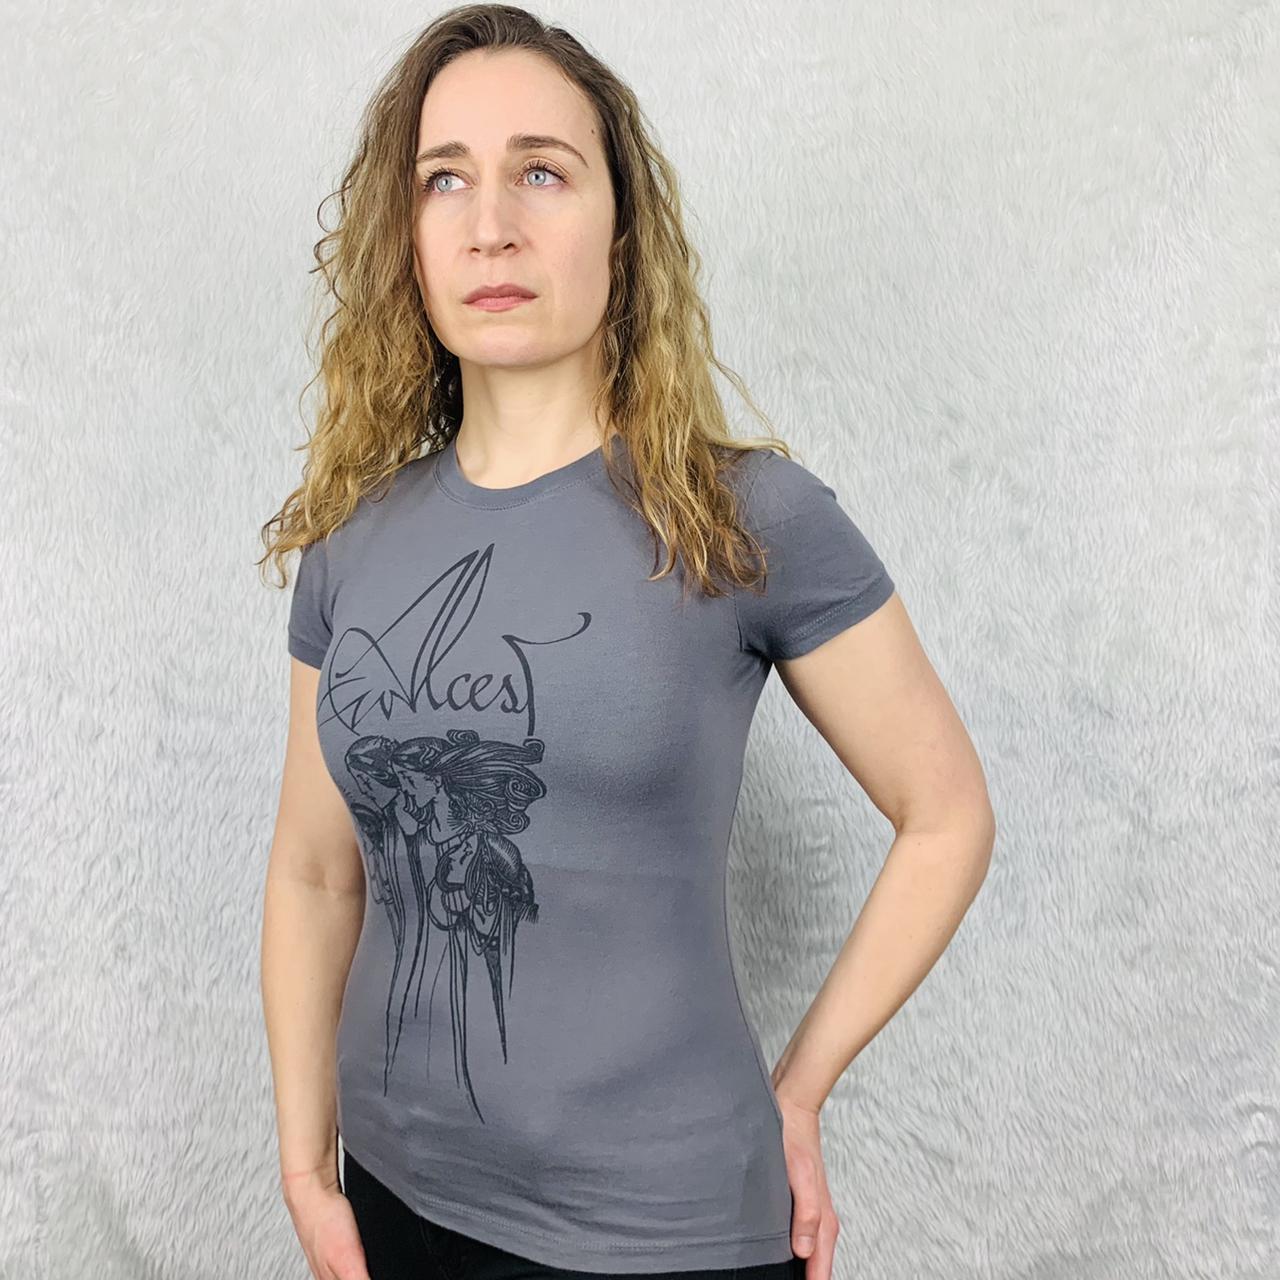 Women's Grey T-shirt